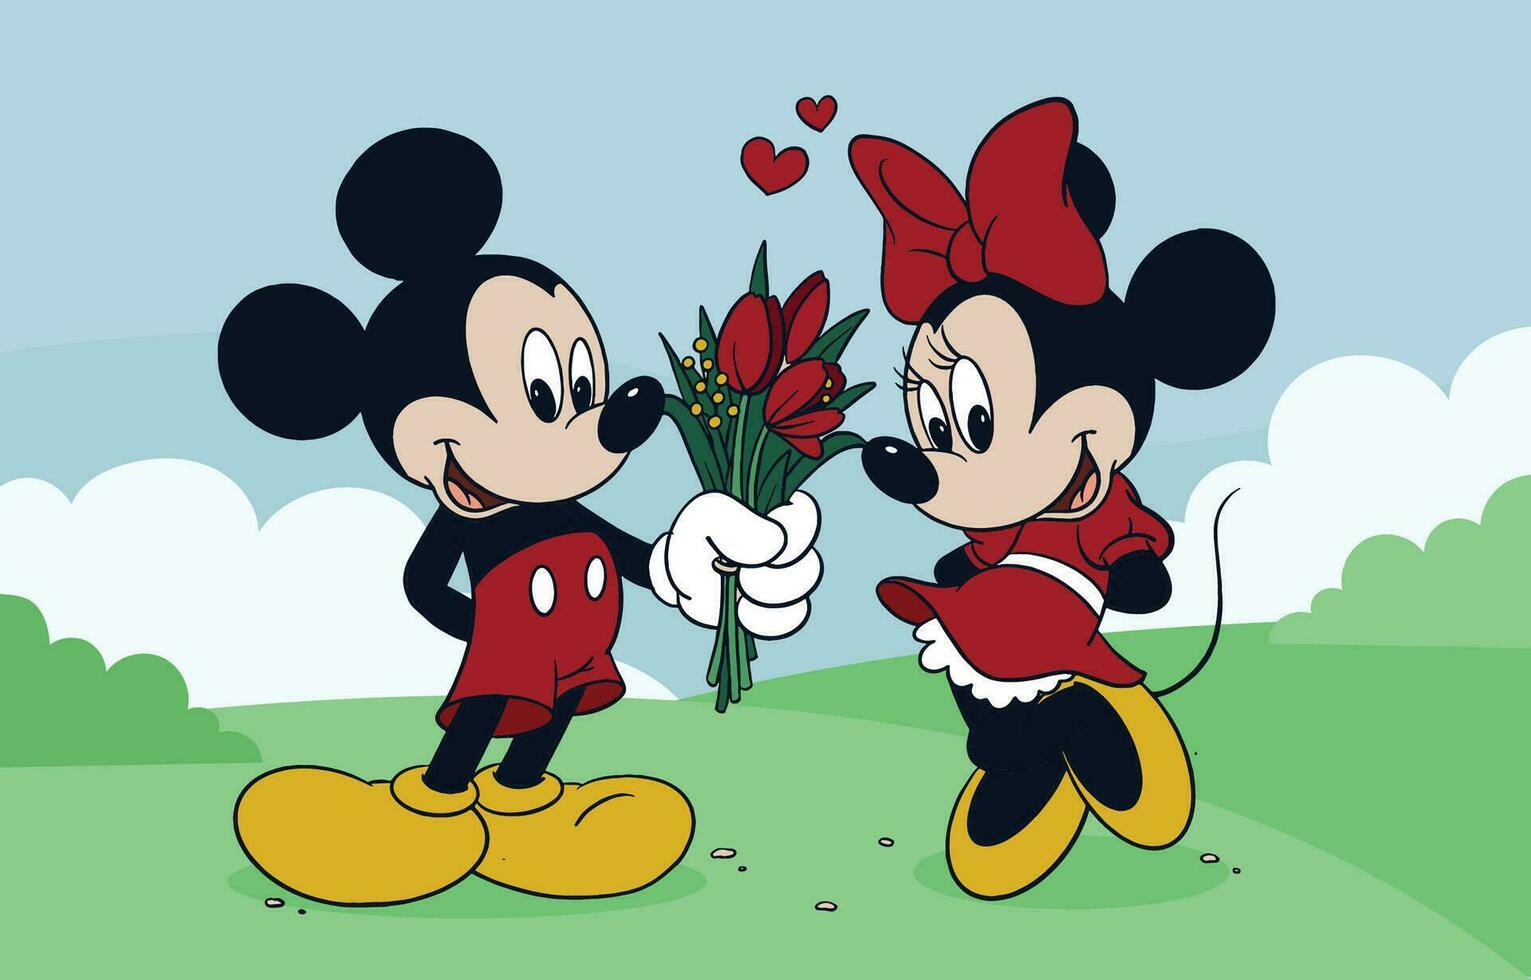 süß wenig Maus gibt Blume zu seine Besondere Freundin vektor